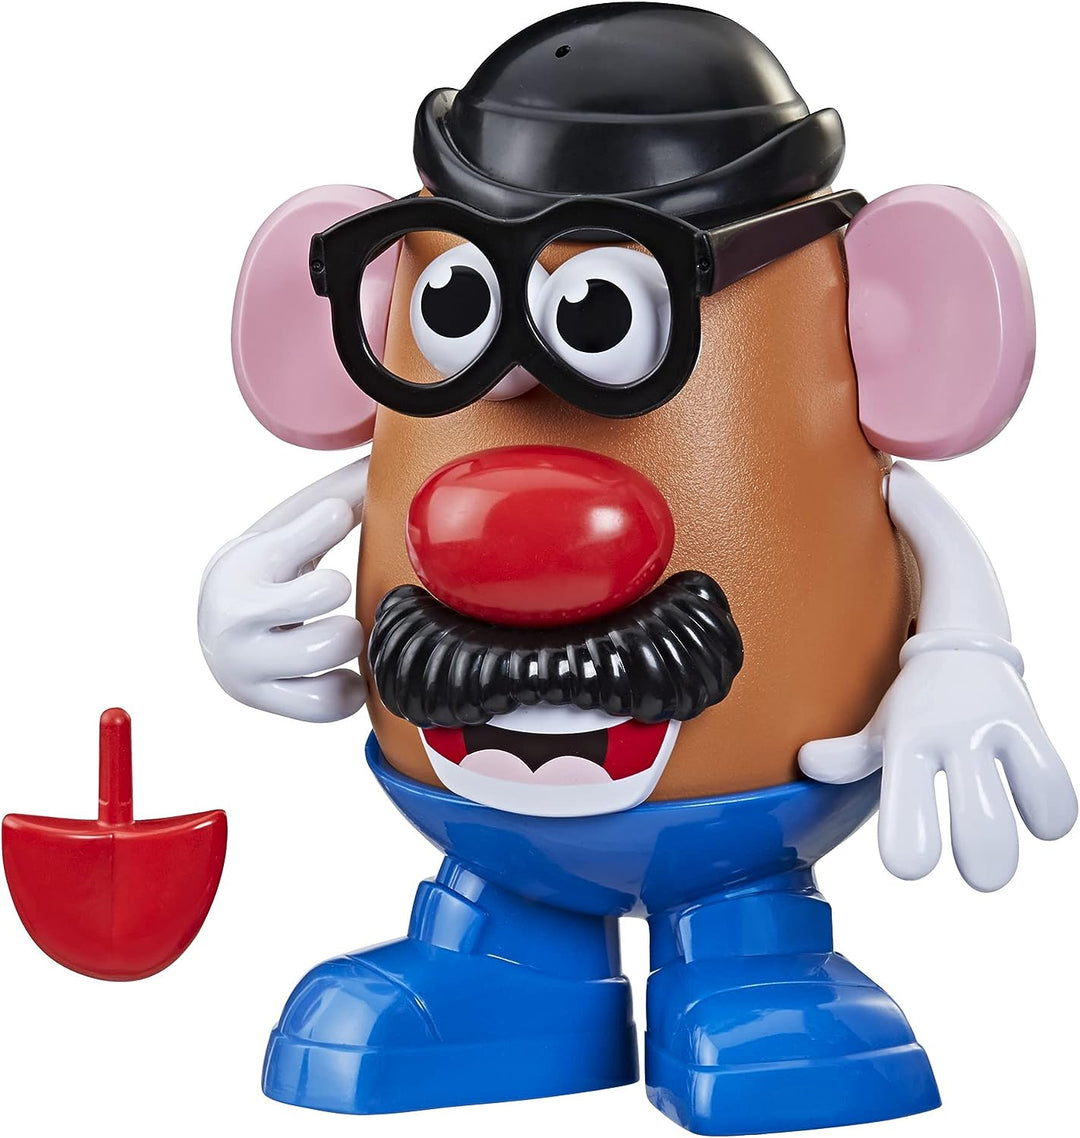 Playskool 5010993873869 Mr. Potato Head, klassisches Spielzeug für Kinder ab 2 Jahren, inkl